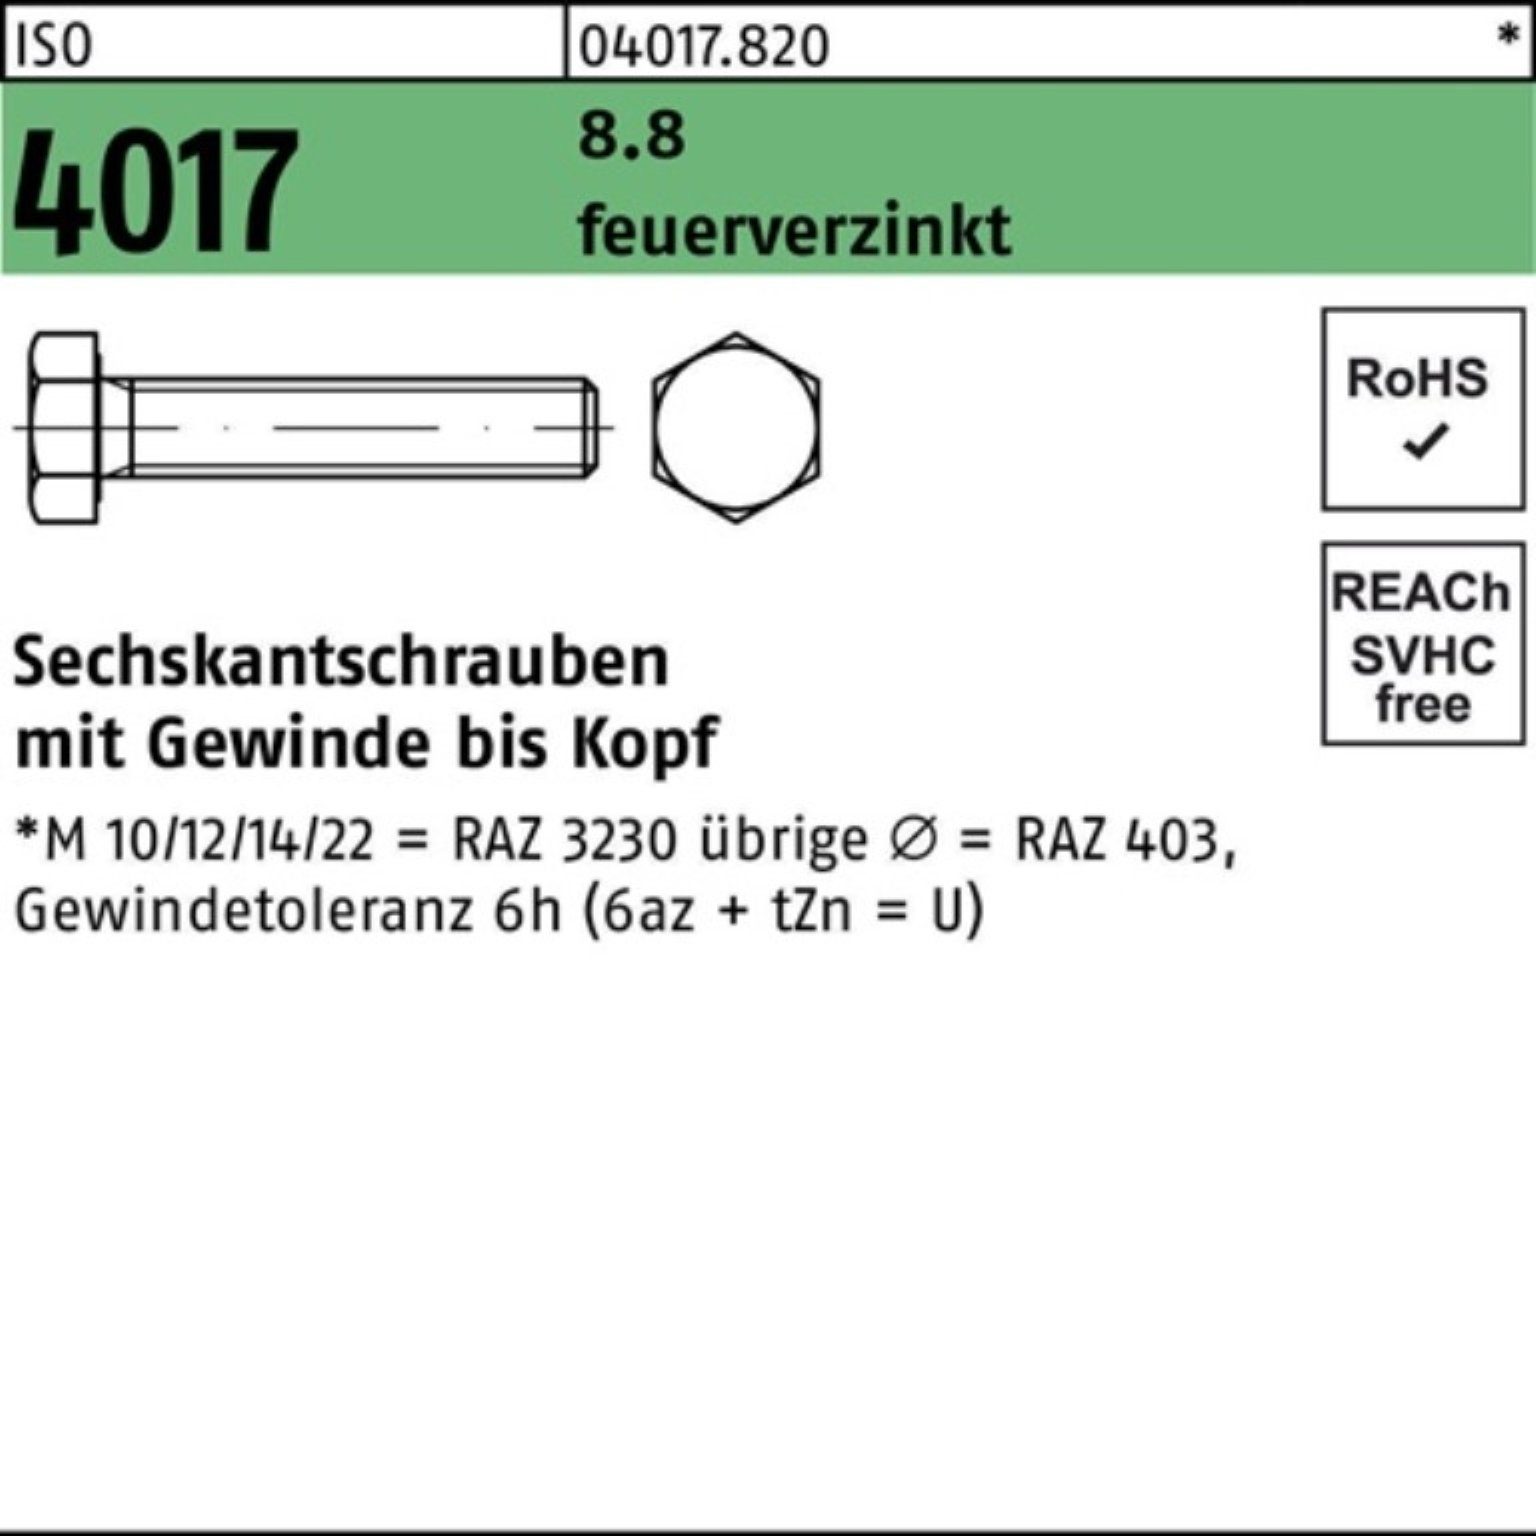 50 Sechskantschraube Bufab Sechskantschraube St 100er 4017 Pack 8.8 ISO feuerverz. 60 VG M16x